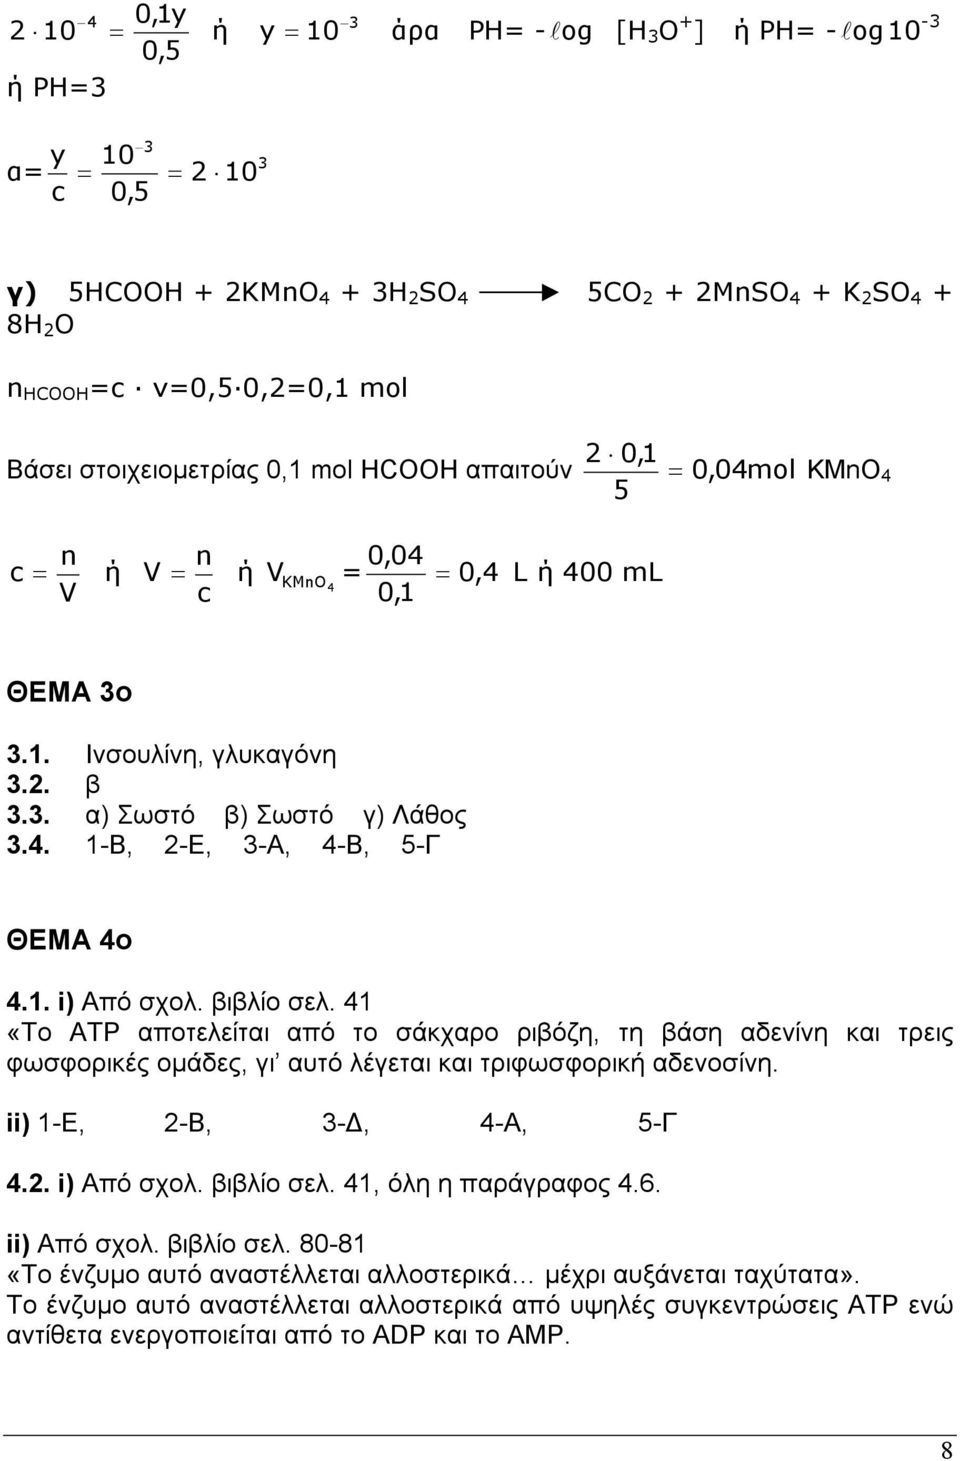 βιβίο σε. 1 «Το ΑΤΡ αποτεείται από το σάκχαρο ριβόζη, τη βάση αδενίνη και τρεις φωσφορικές οµάδες, γι αυτό έγεται και τριφωσφορική αδενοσίνη. ii) 1-E, -B, 3-, -A, 5-Γ.. i) Από σχο. βιβίο σε.